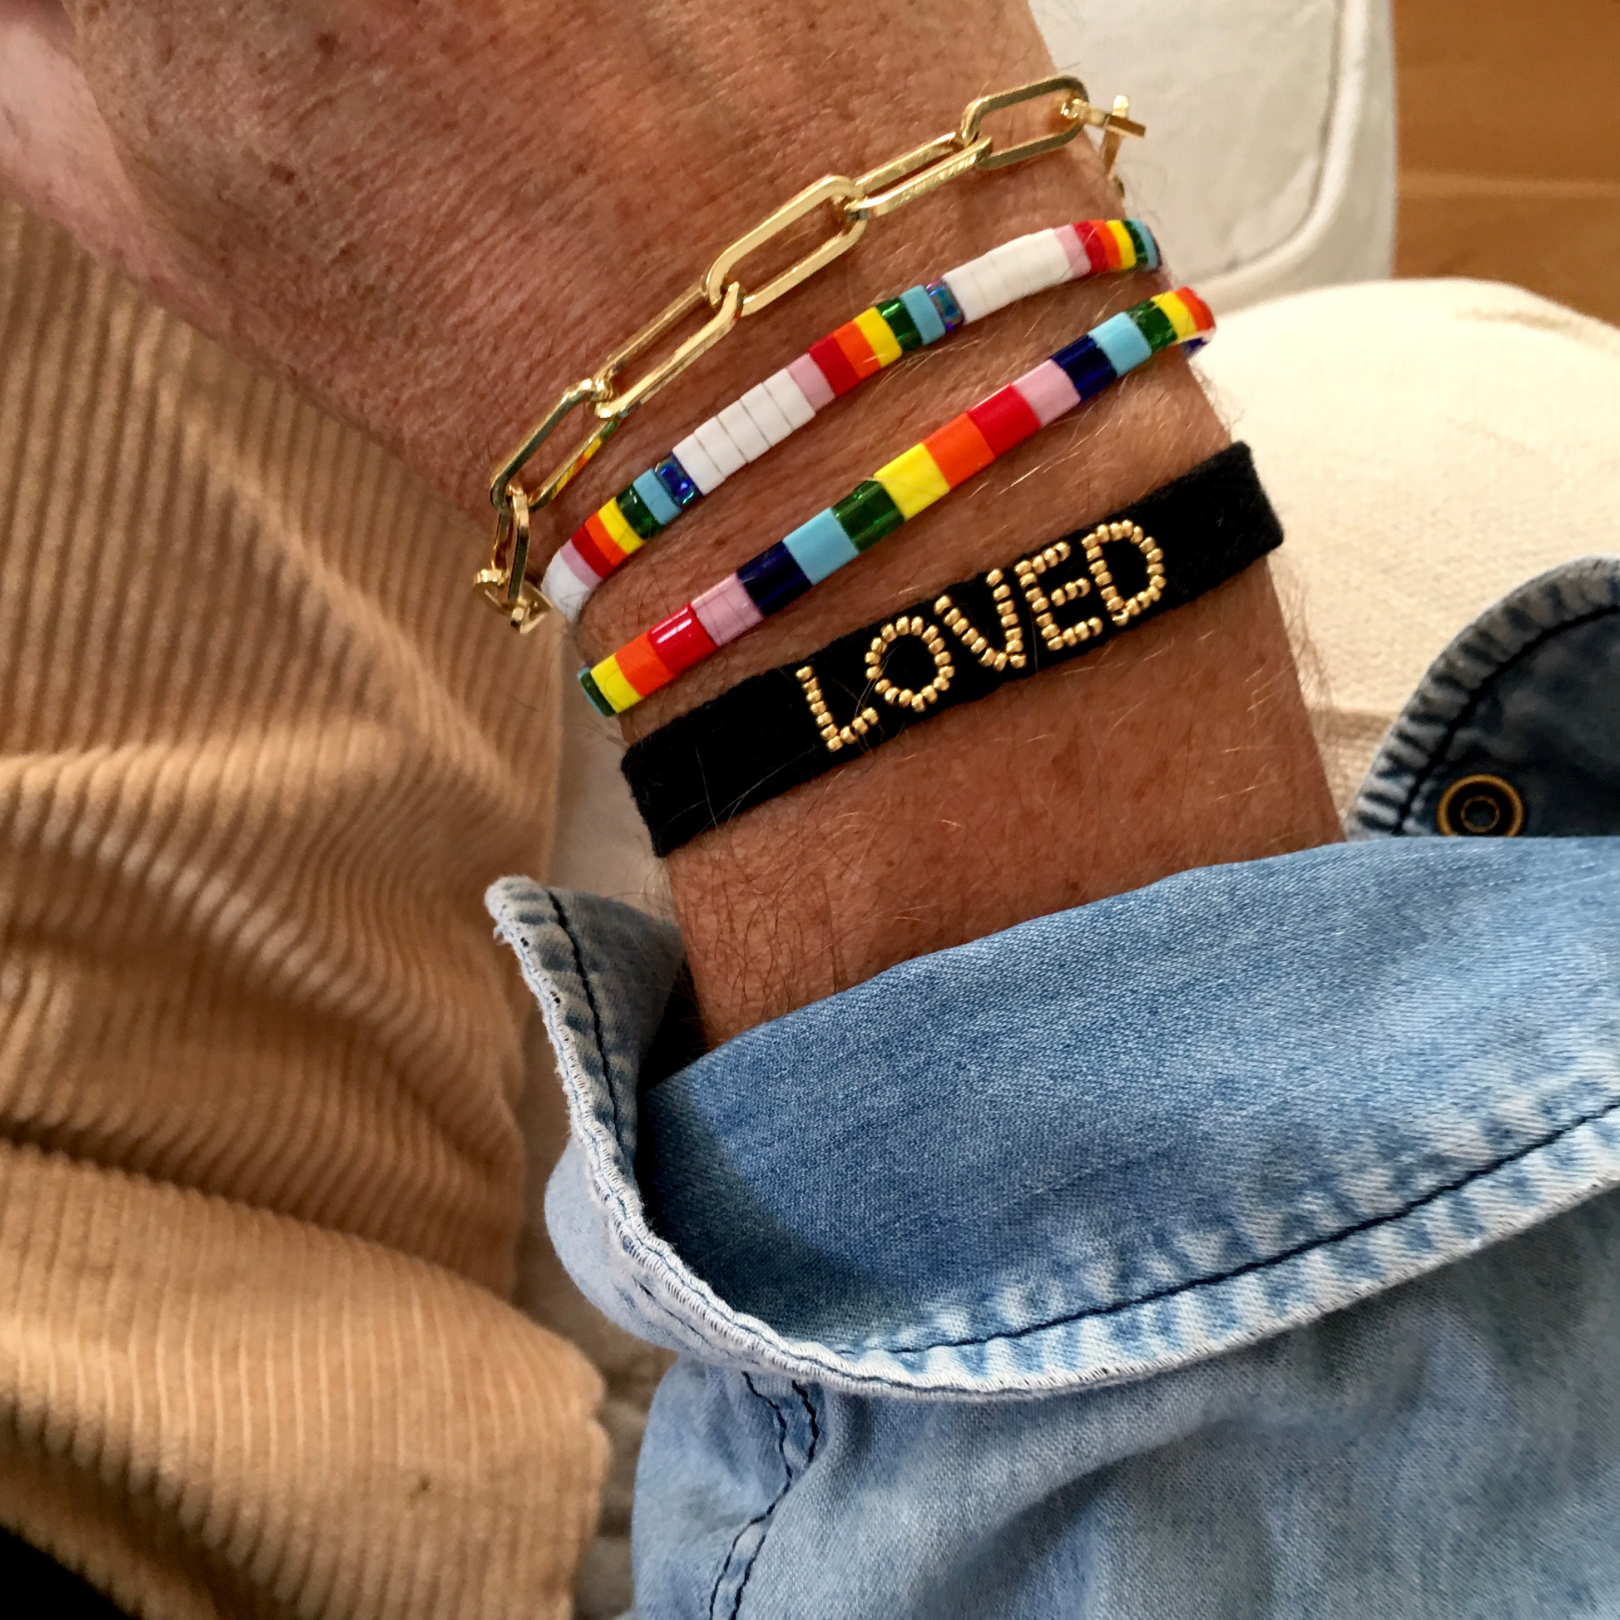 Share more than 115 live love lebanon bracelet super hot - kidsdream.edu.vn